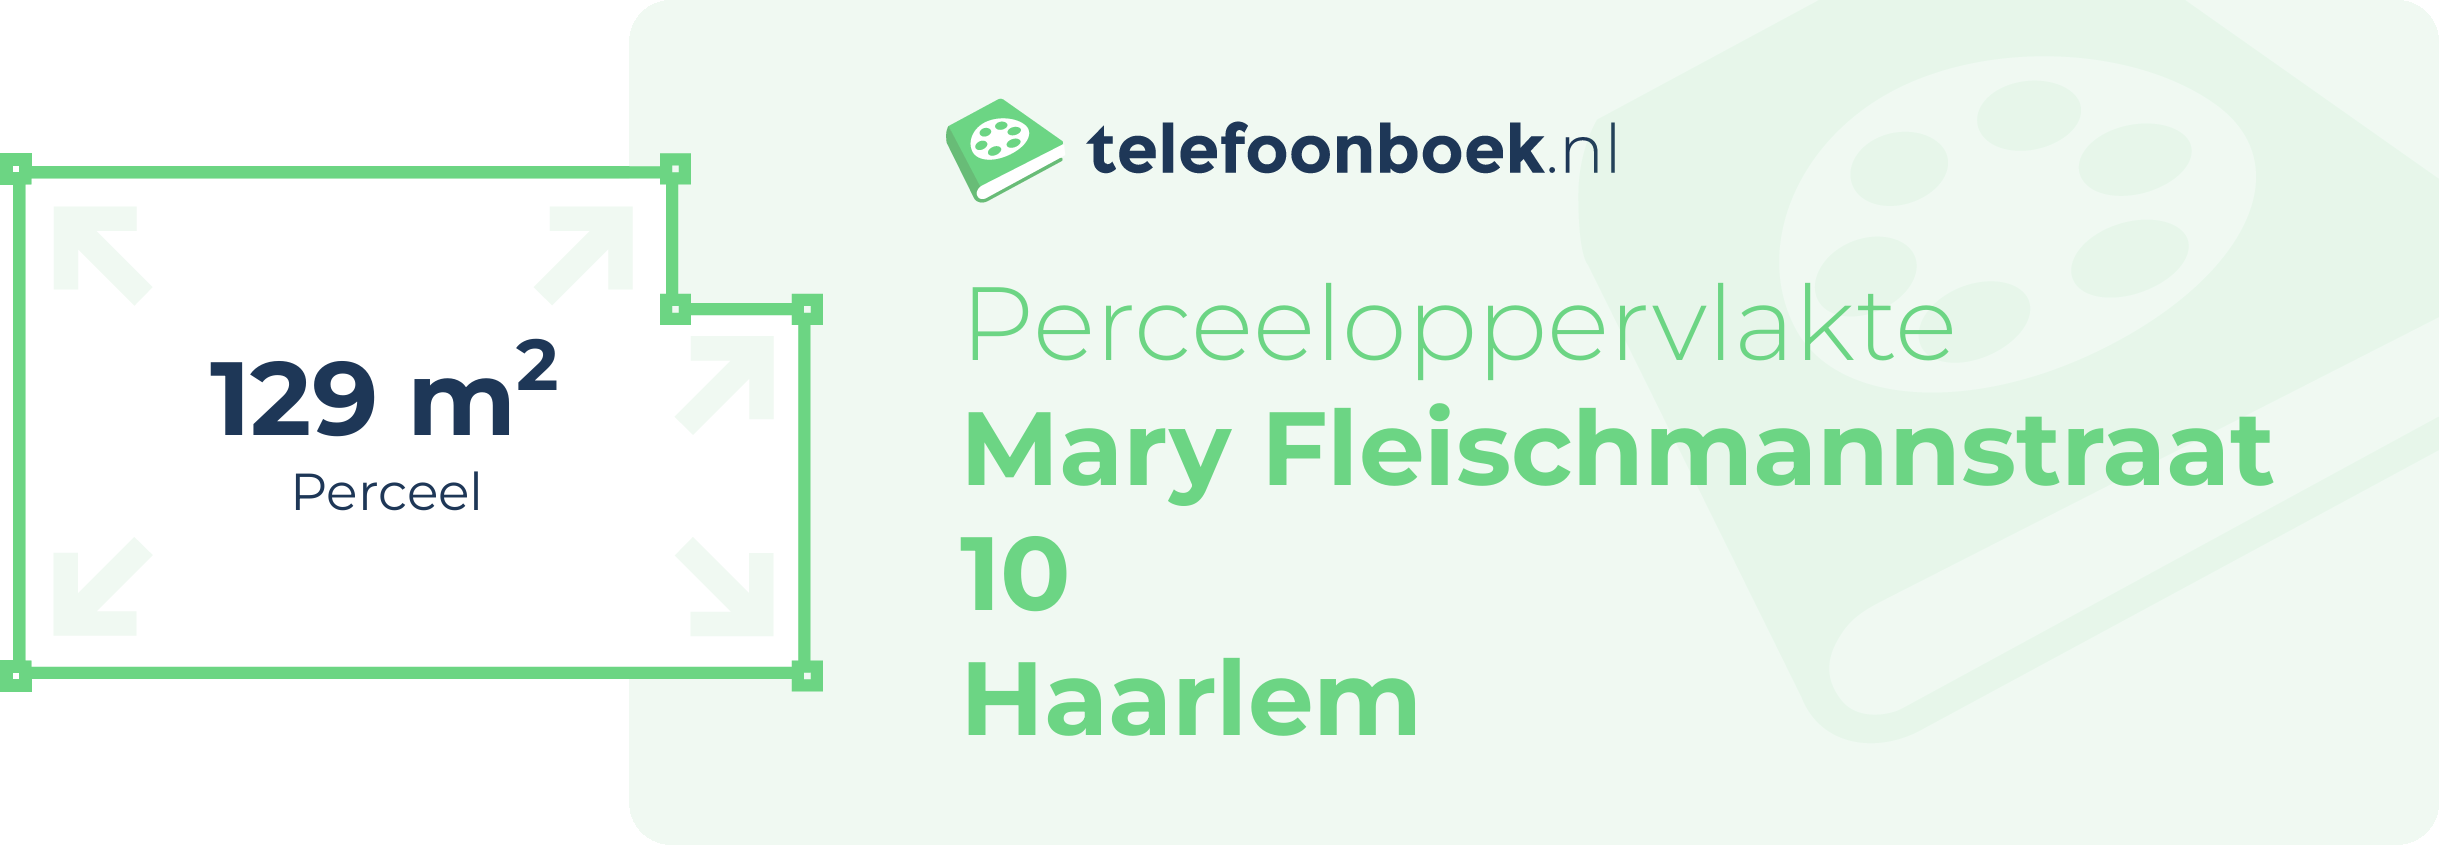 Perceeloppervlakte Mary Fleischmannstraat 10 Haarlem